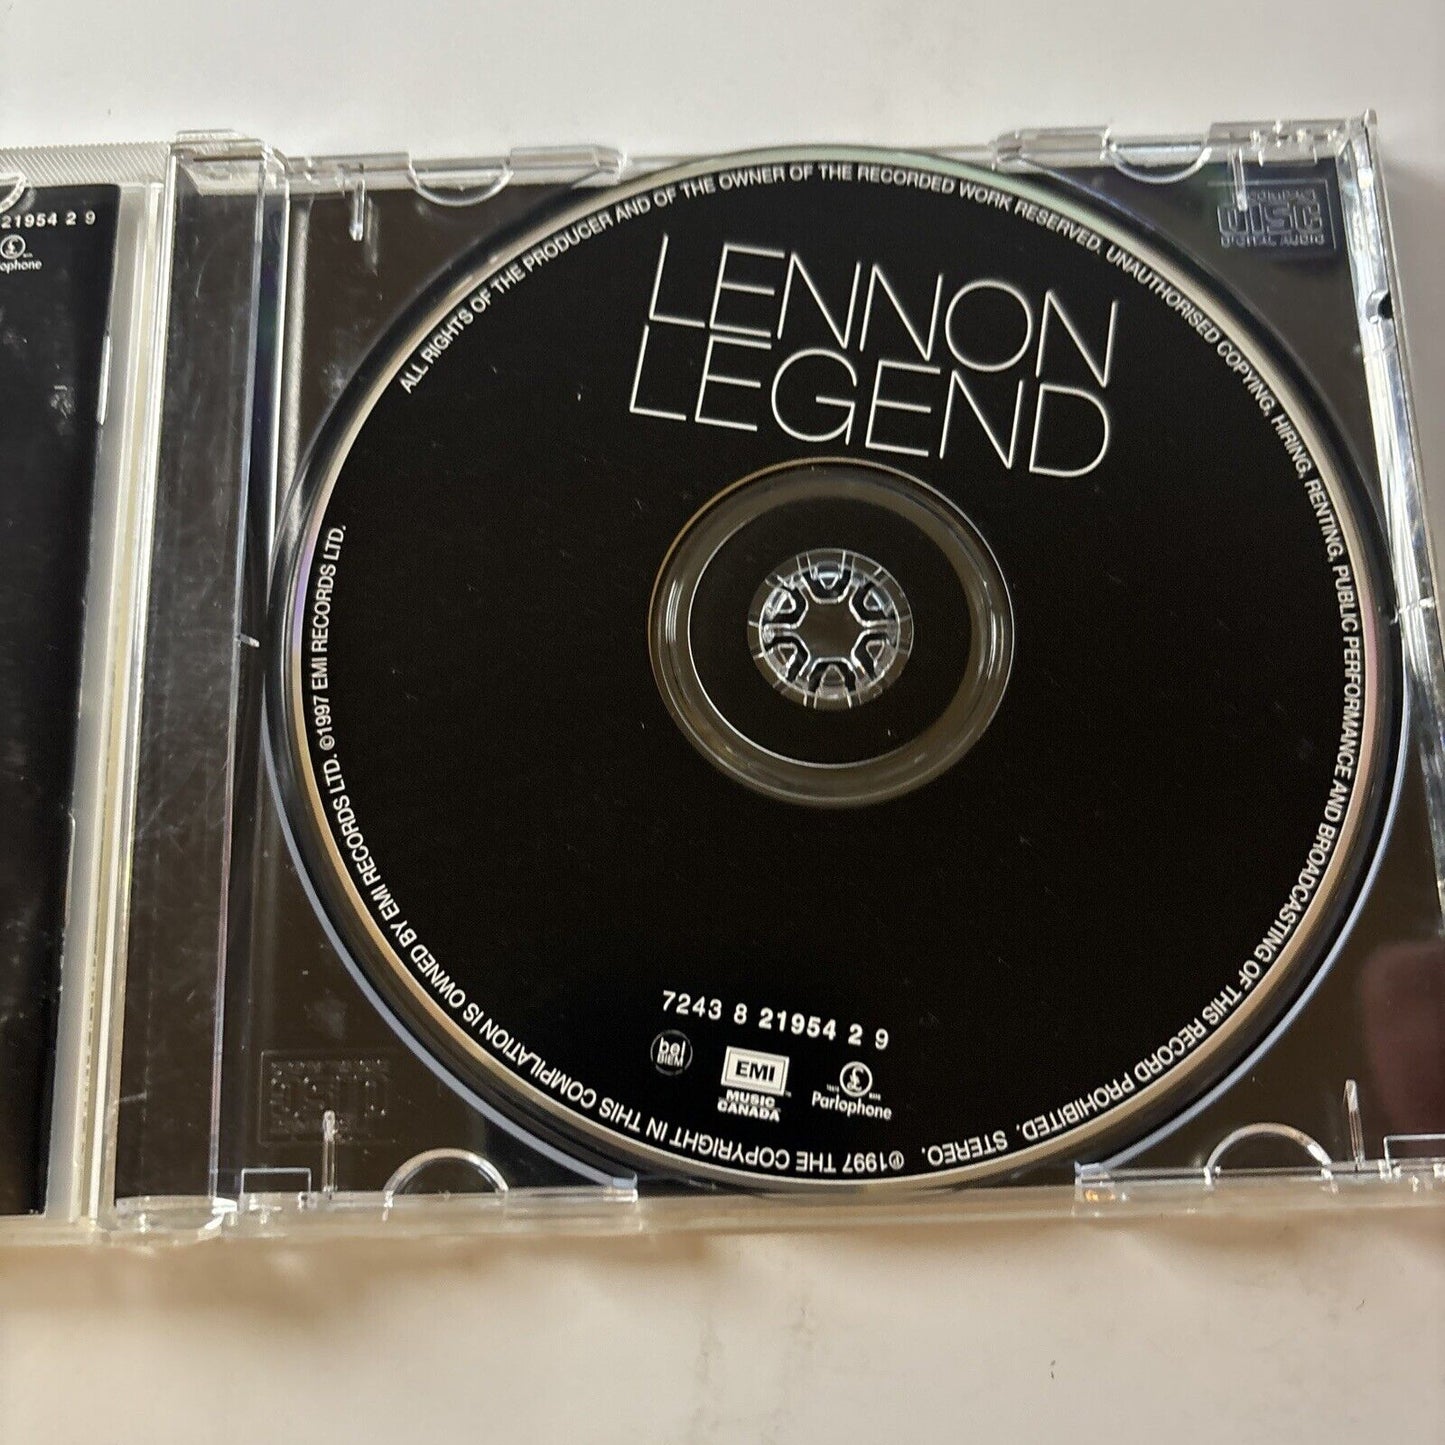 John Lennon - Lennon Legend: The Very Best of John Lennon (CD, 1998)